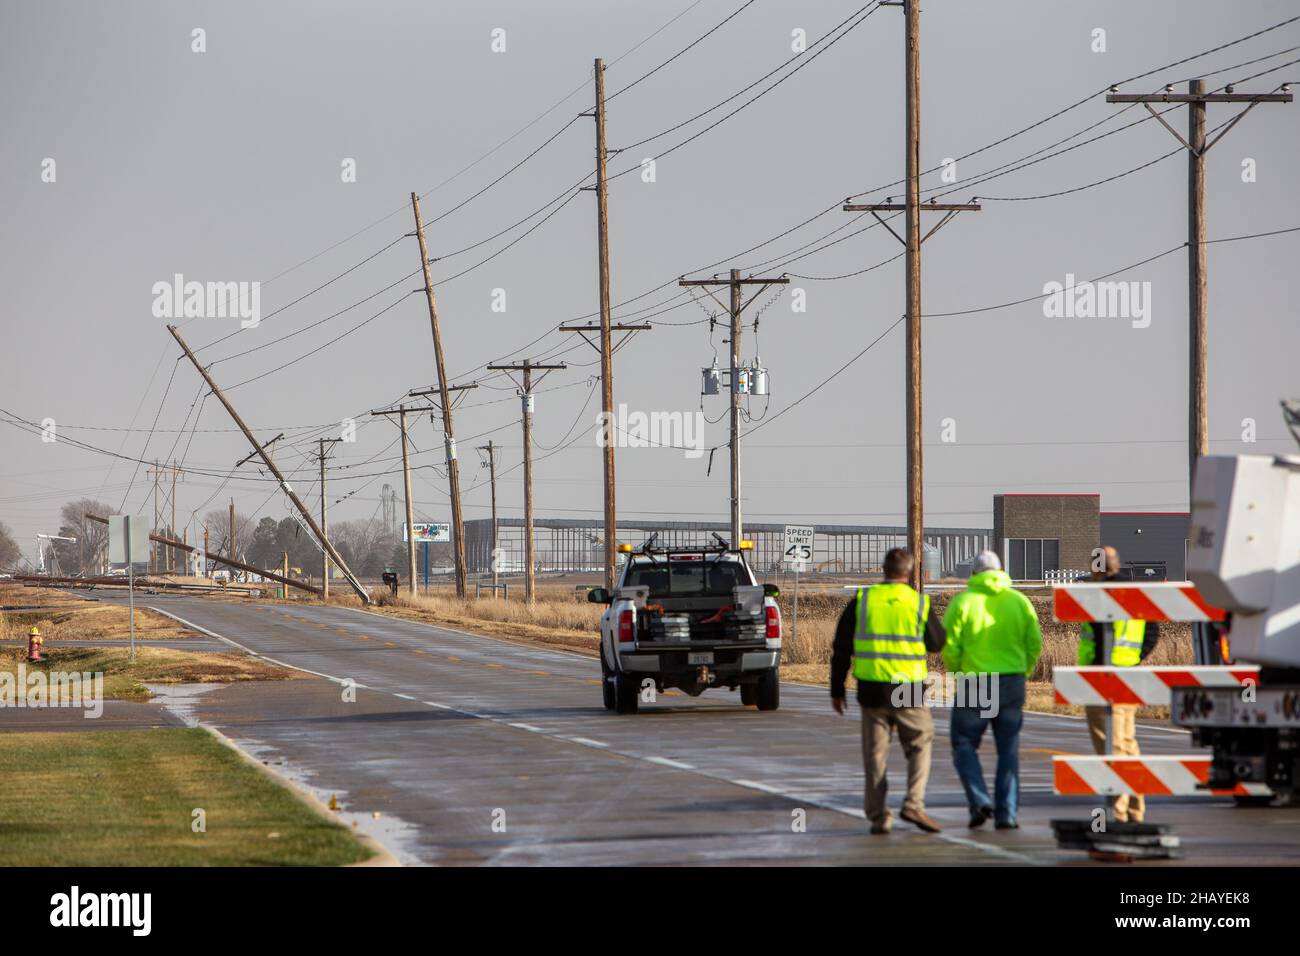 Los trabajadores de servicios públicos evalúan los daños a las líneas eléctricas en Kearney, Nebraska, el 15 de diciembre de 2021, después de que una tormenta eléctrica severa soplara a través de la ciudad. Foto de stock